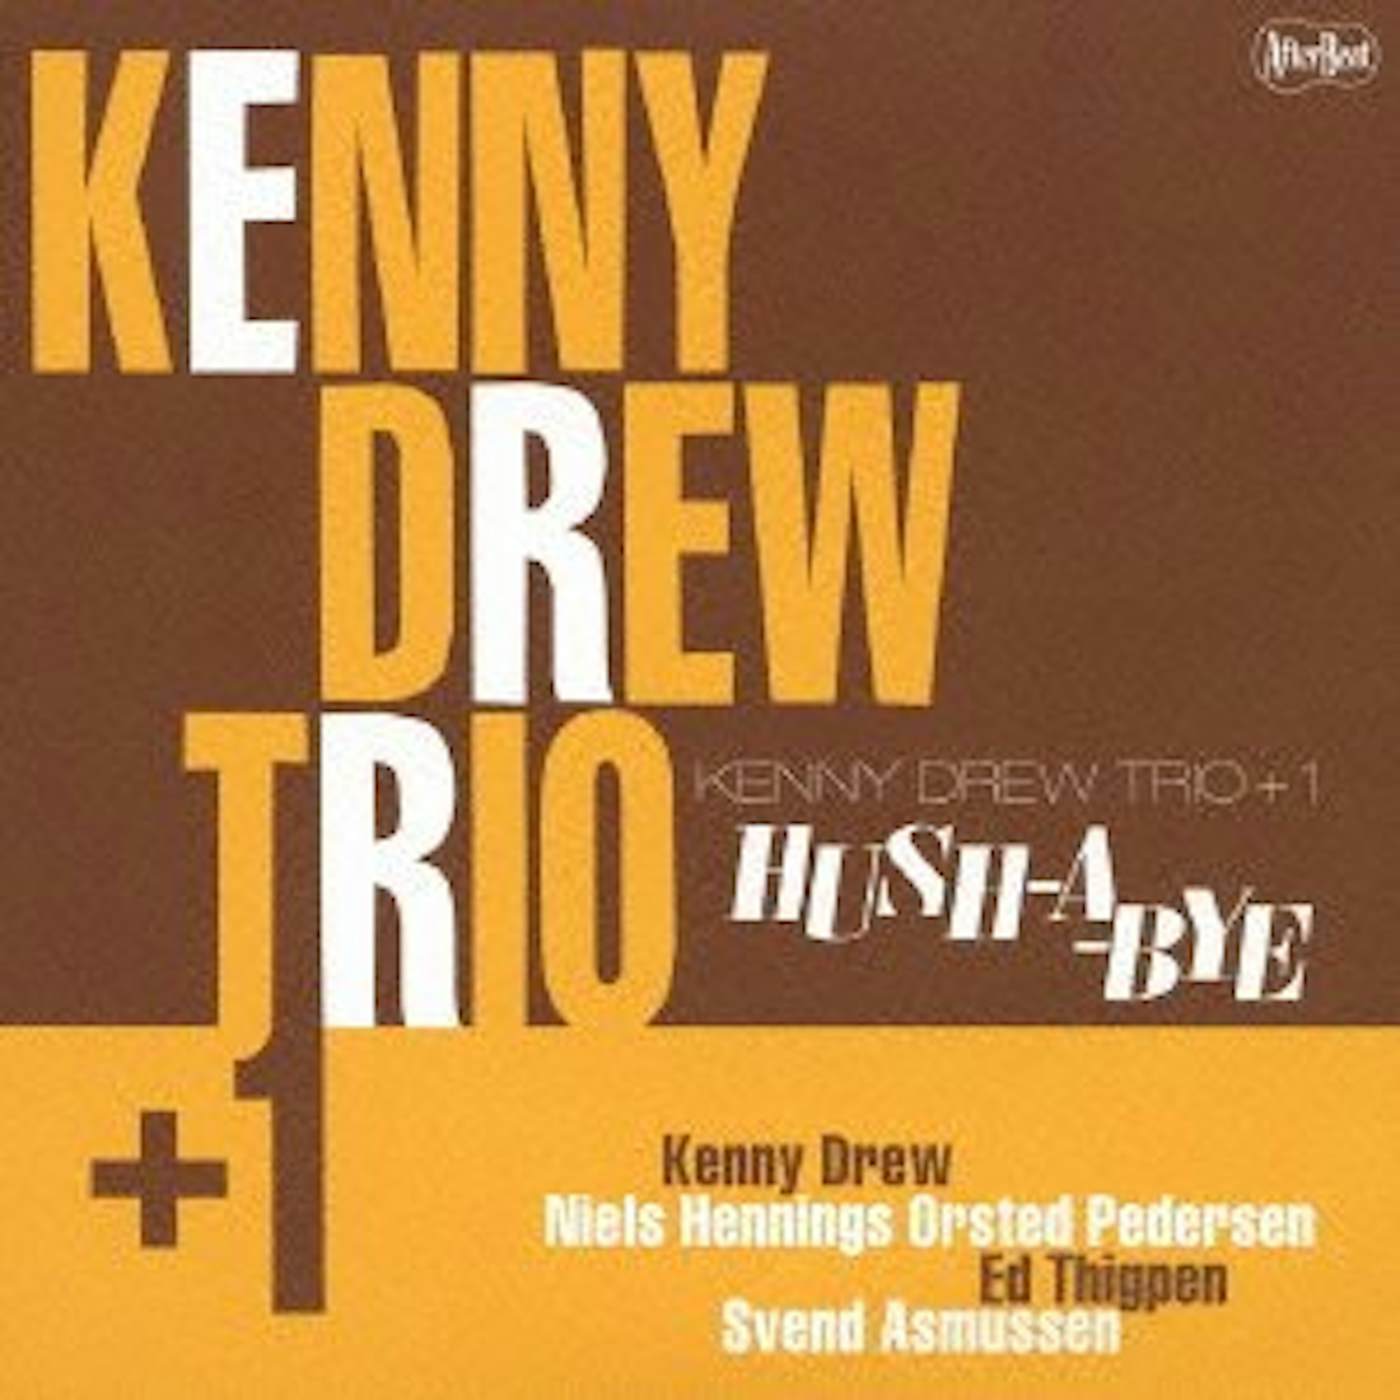 Kenny Drew HASH-A-BYE CD